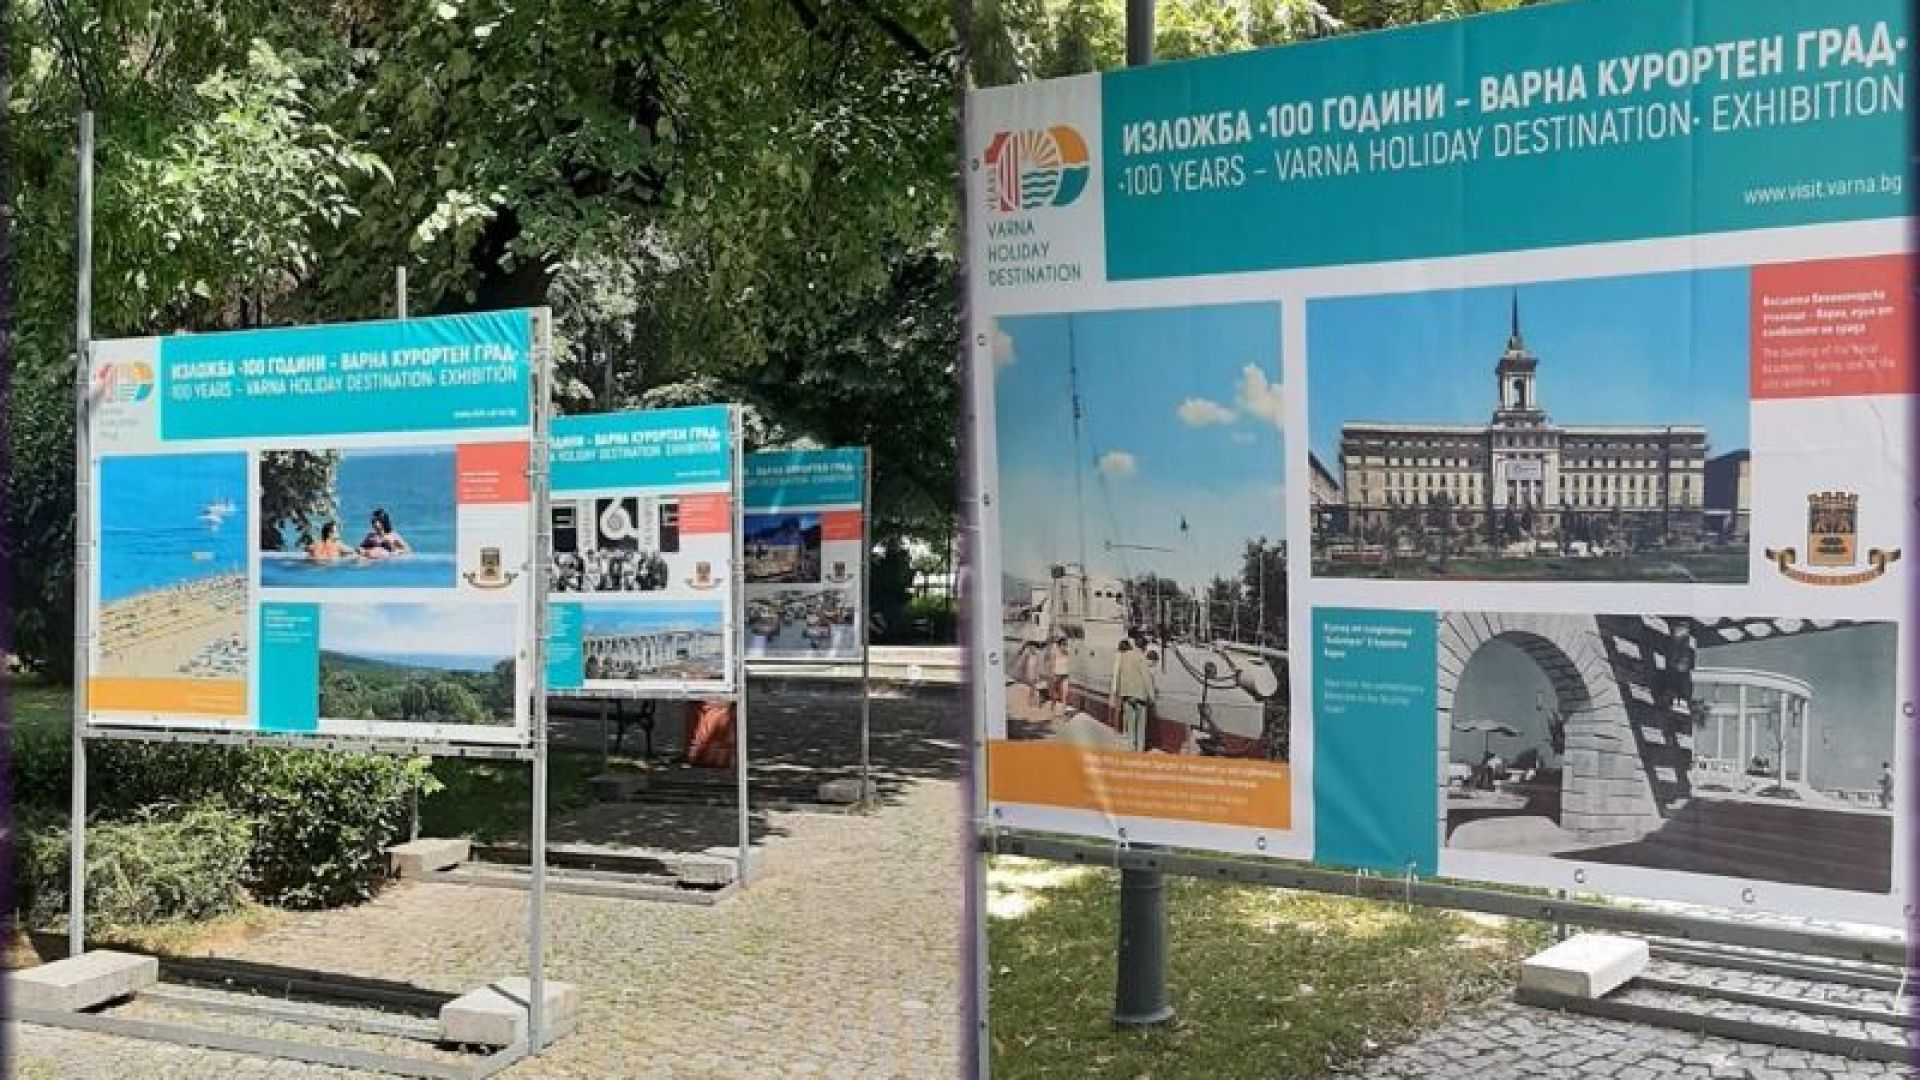 Пътуваща изложба "Варна - 100 години курортен град" гостува в Пловдив